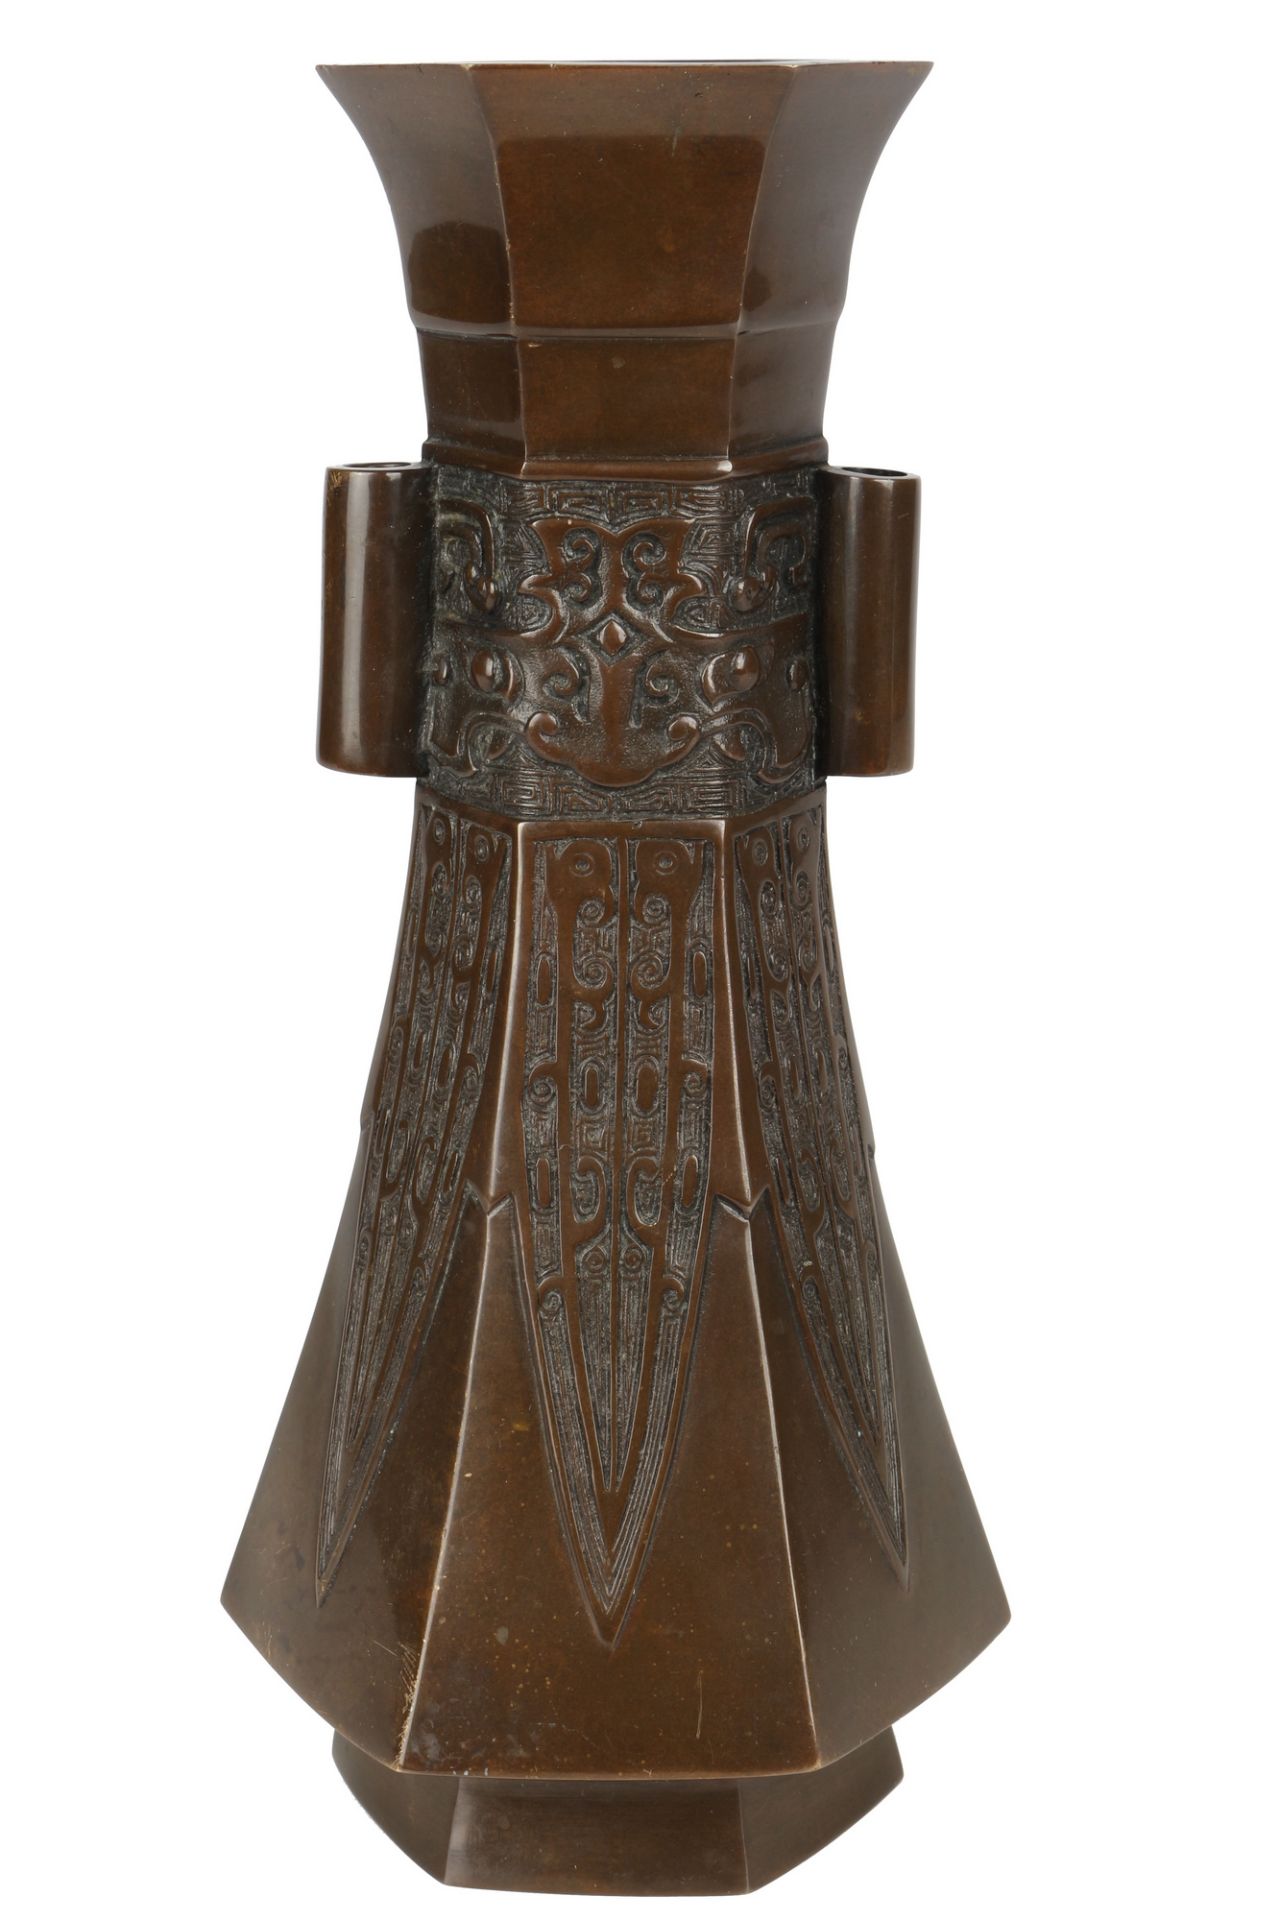 Japan hexagonale Bronze Vase Meiji-Period (1868 - 1912), japanese bronze vase,